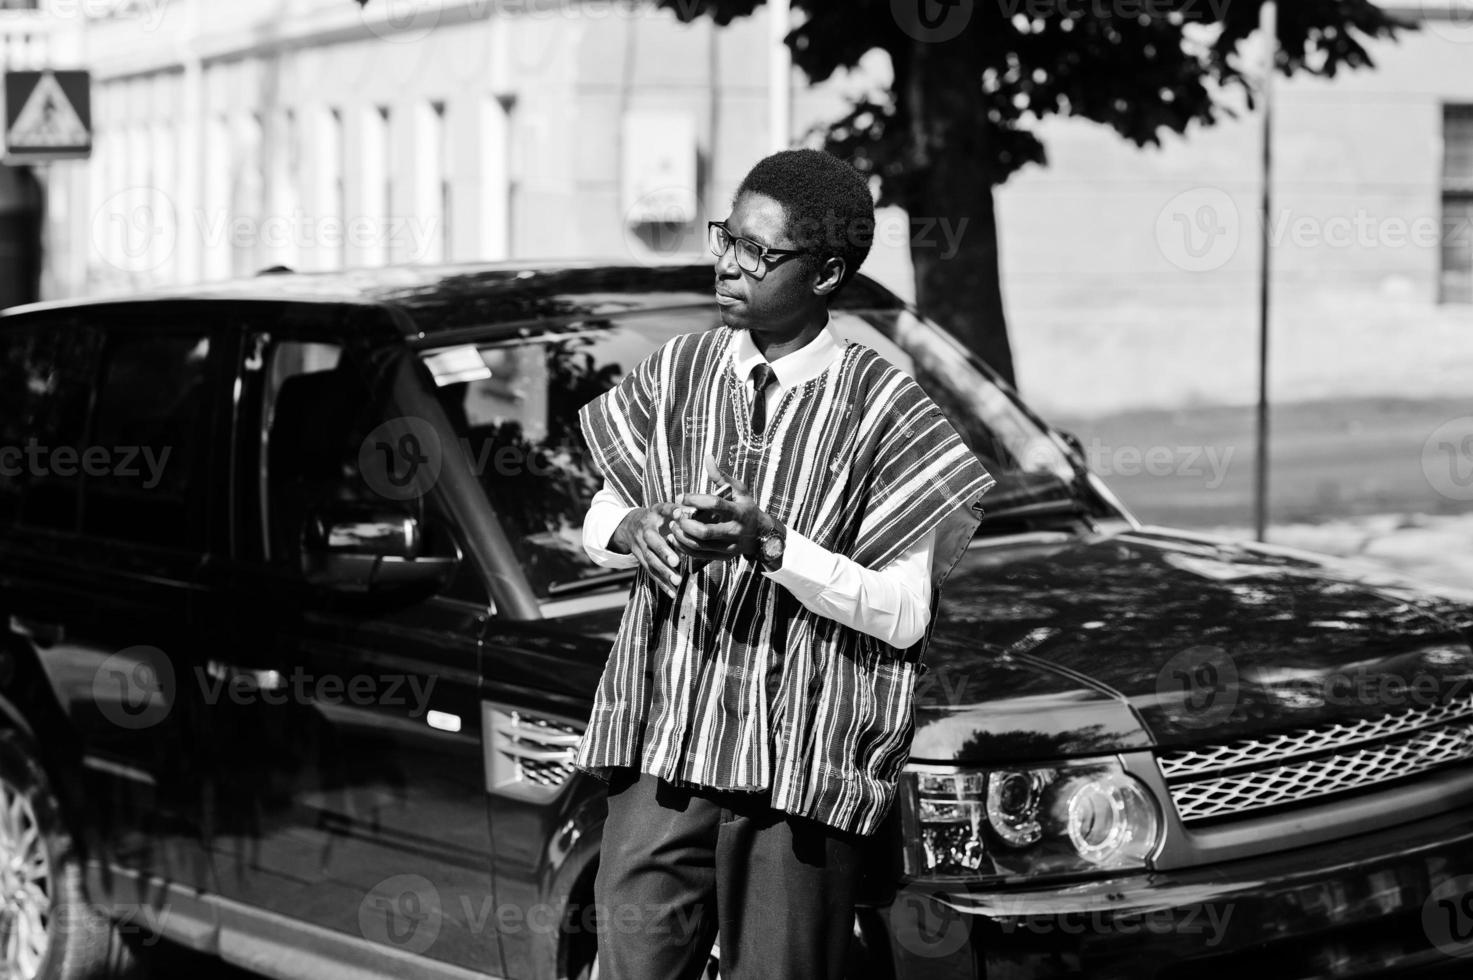 empresário africano em roupas tradicionais e óculos com celular contra carro preto suv. ricos africanos. foto